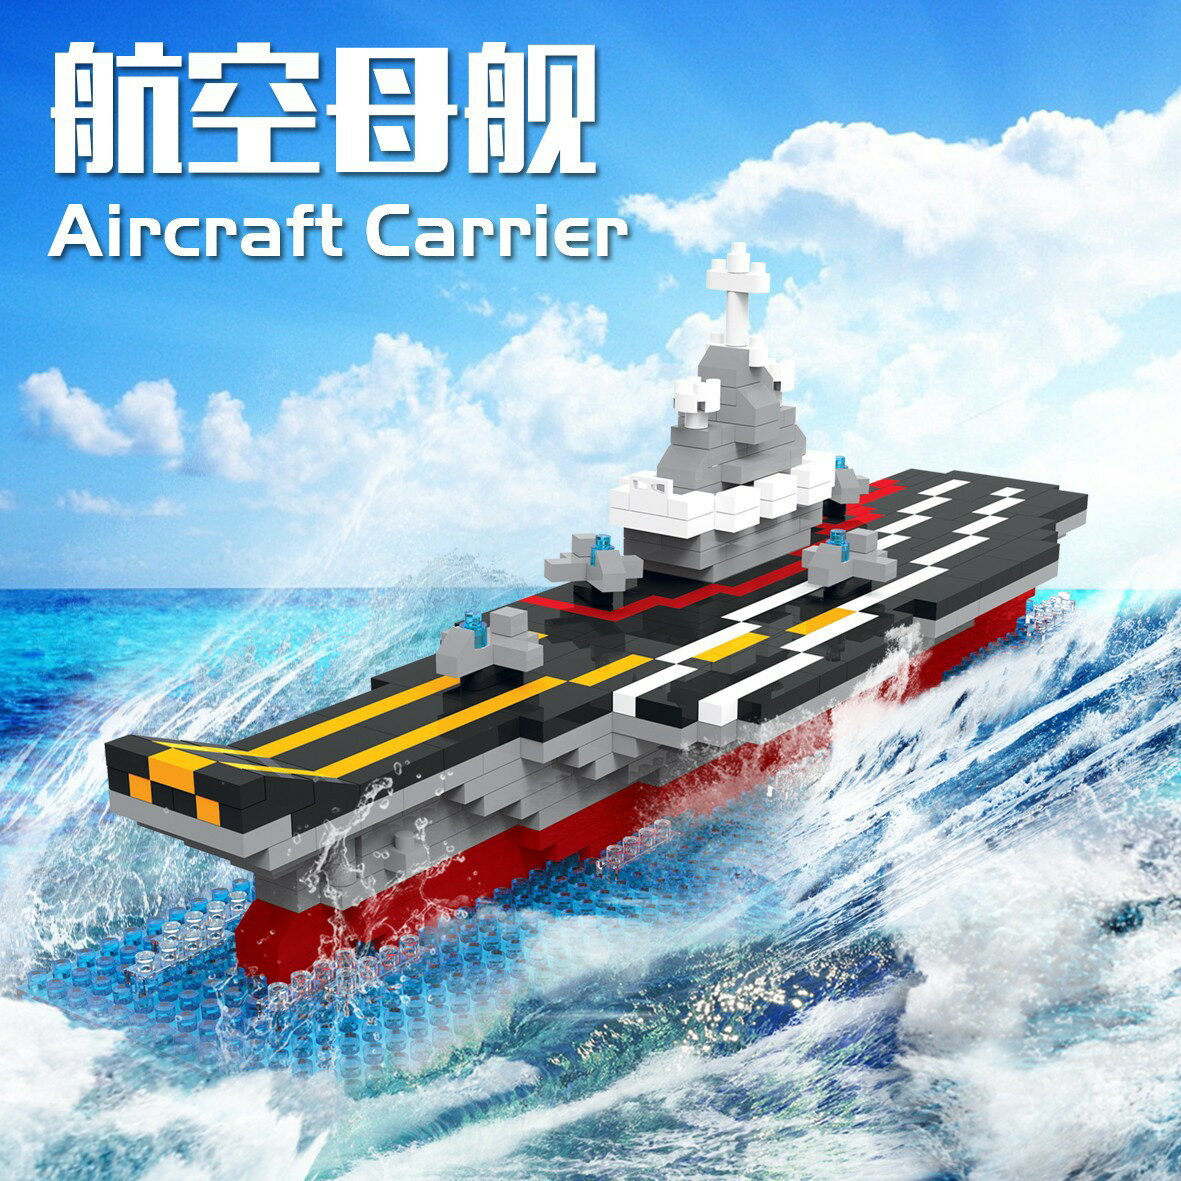 兼容樂高男孩拼裝中國航空母艦積木微顆粒益智玩具禮物模型擺件77